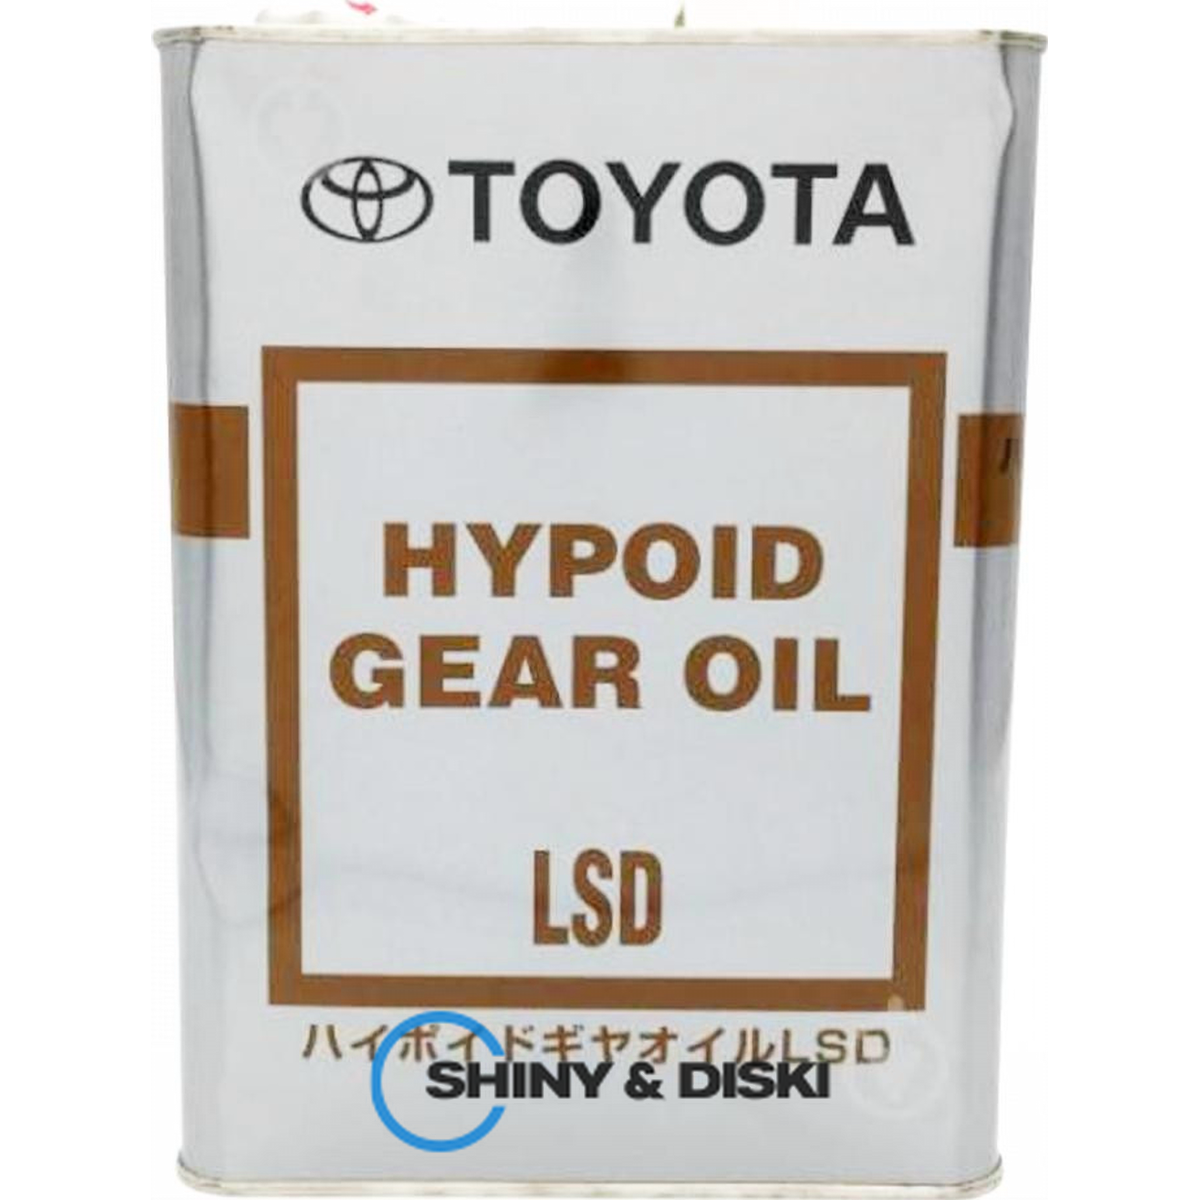 toyota hypoid gear oil lsd 85w-90 gl-5 (4л)